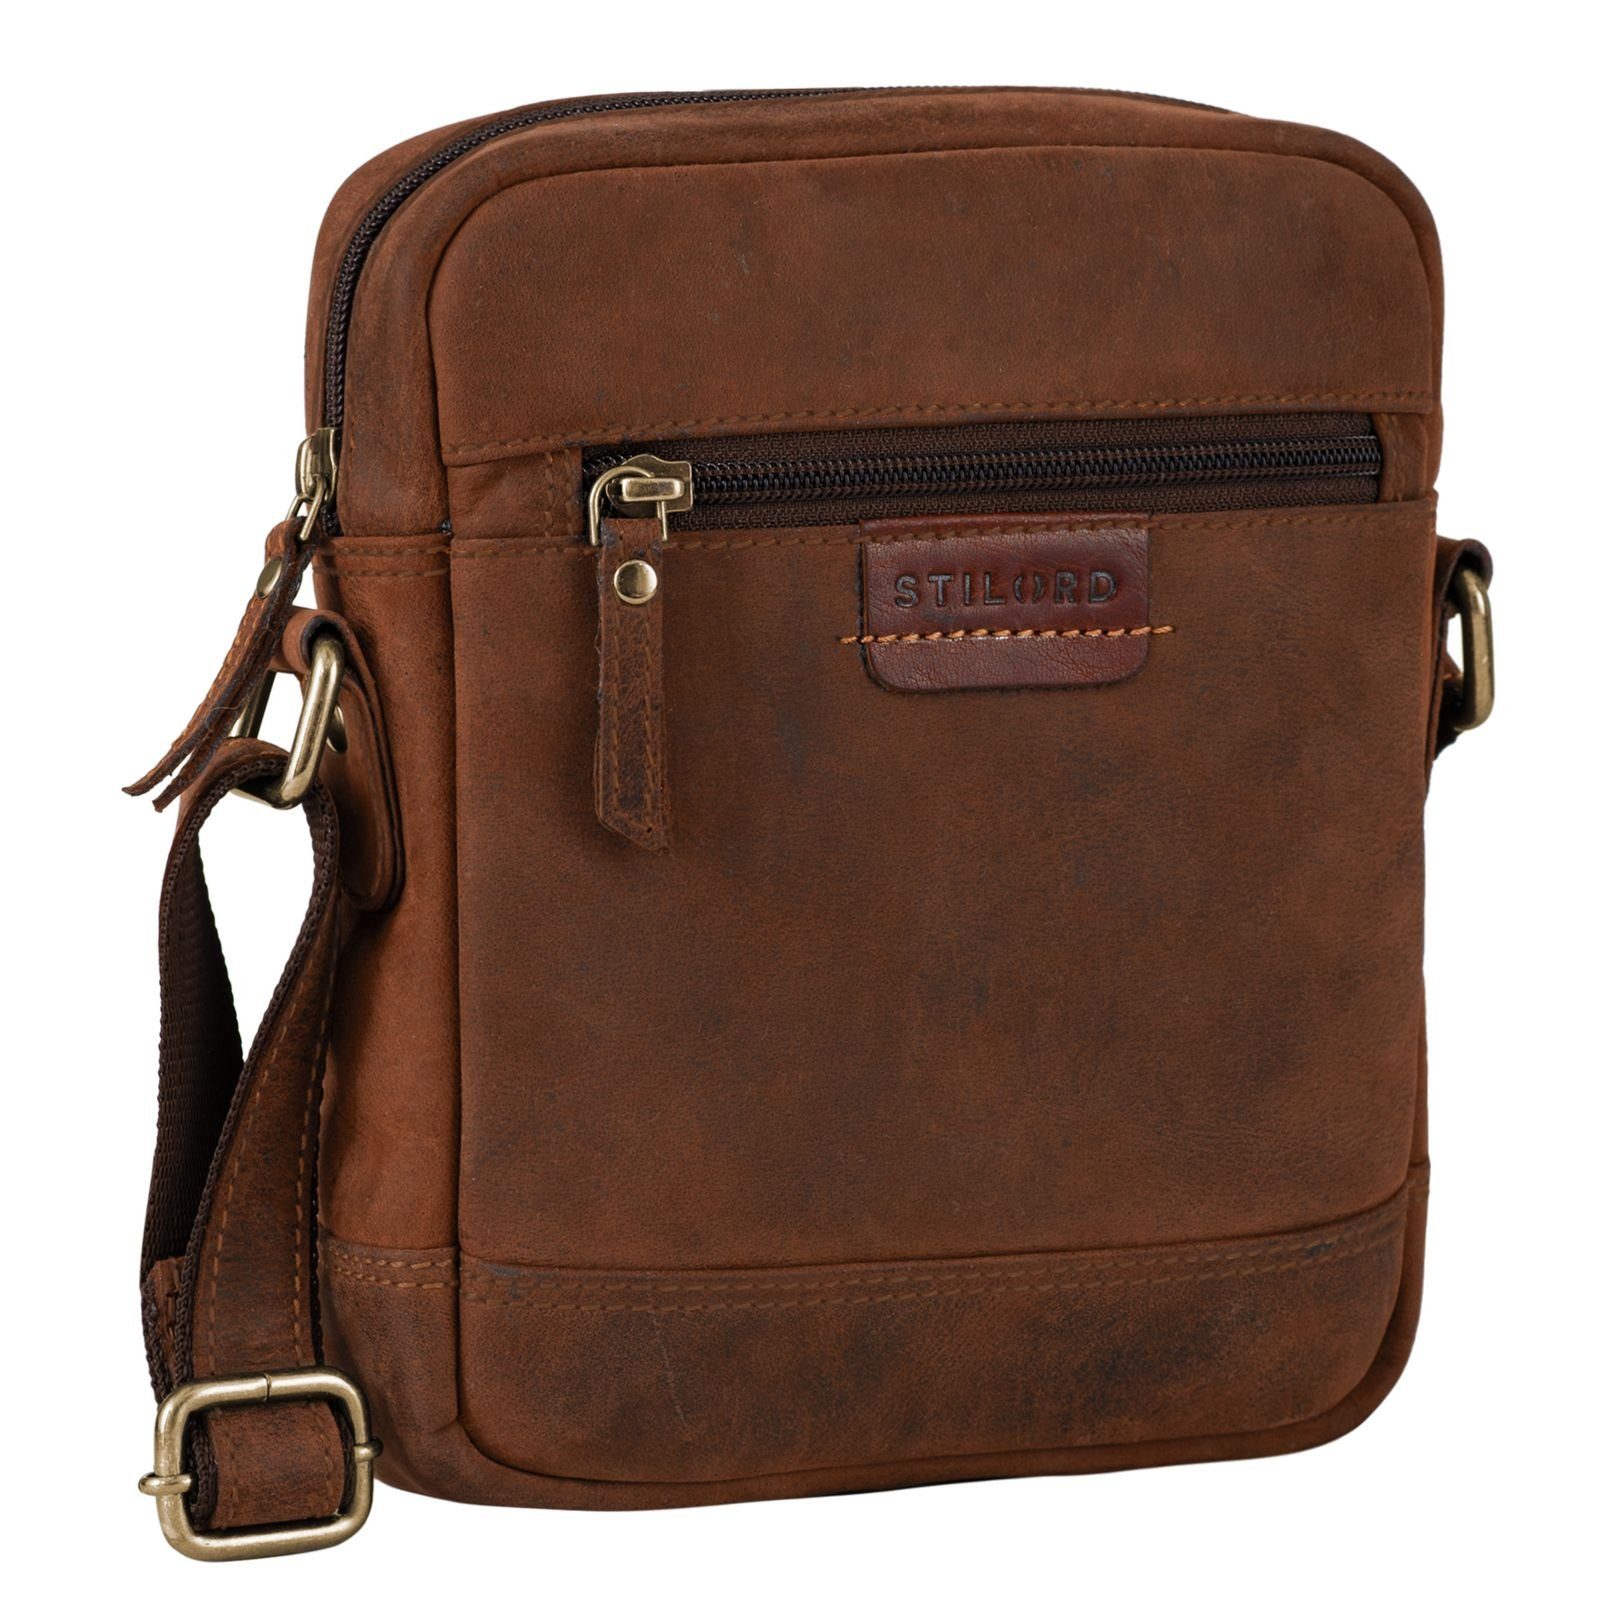 STILORD Messenger sepia Tasche Vintage - zum Leder braun "Brian" Umhängen Bag